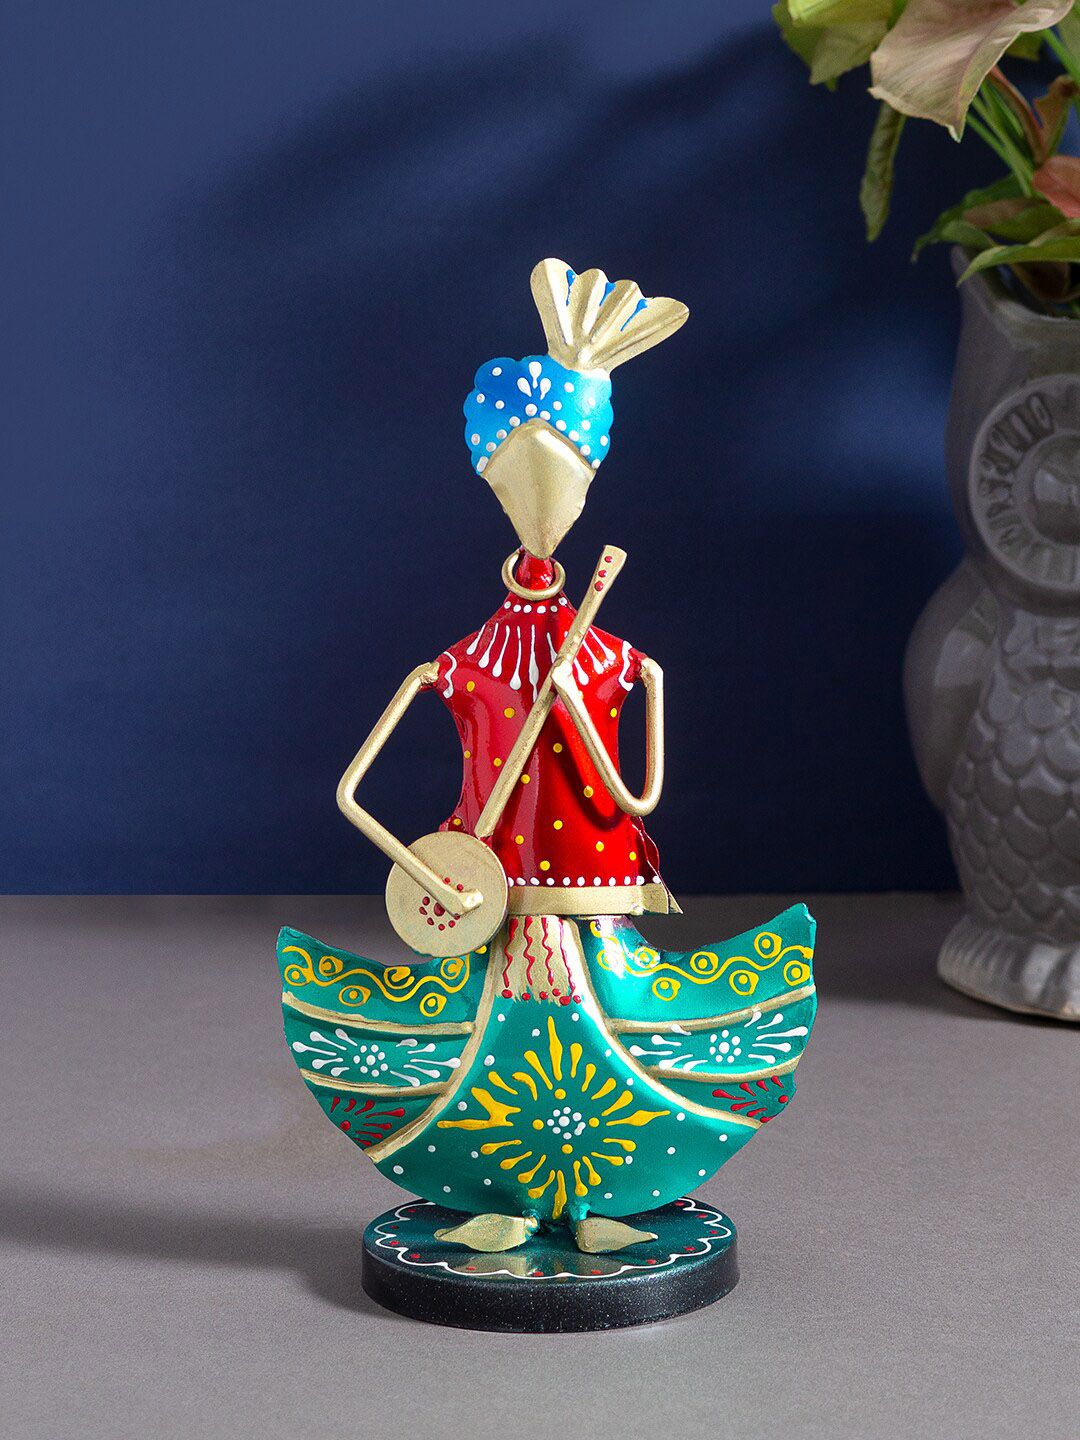 Golden Peacock Multi-coloured Figurine Musician Decorative Showpiece Price in India